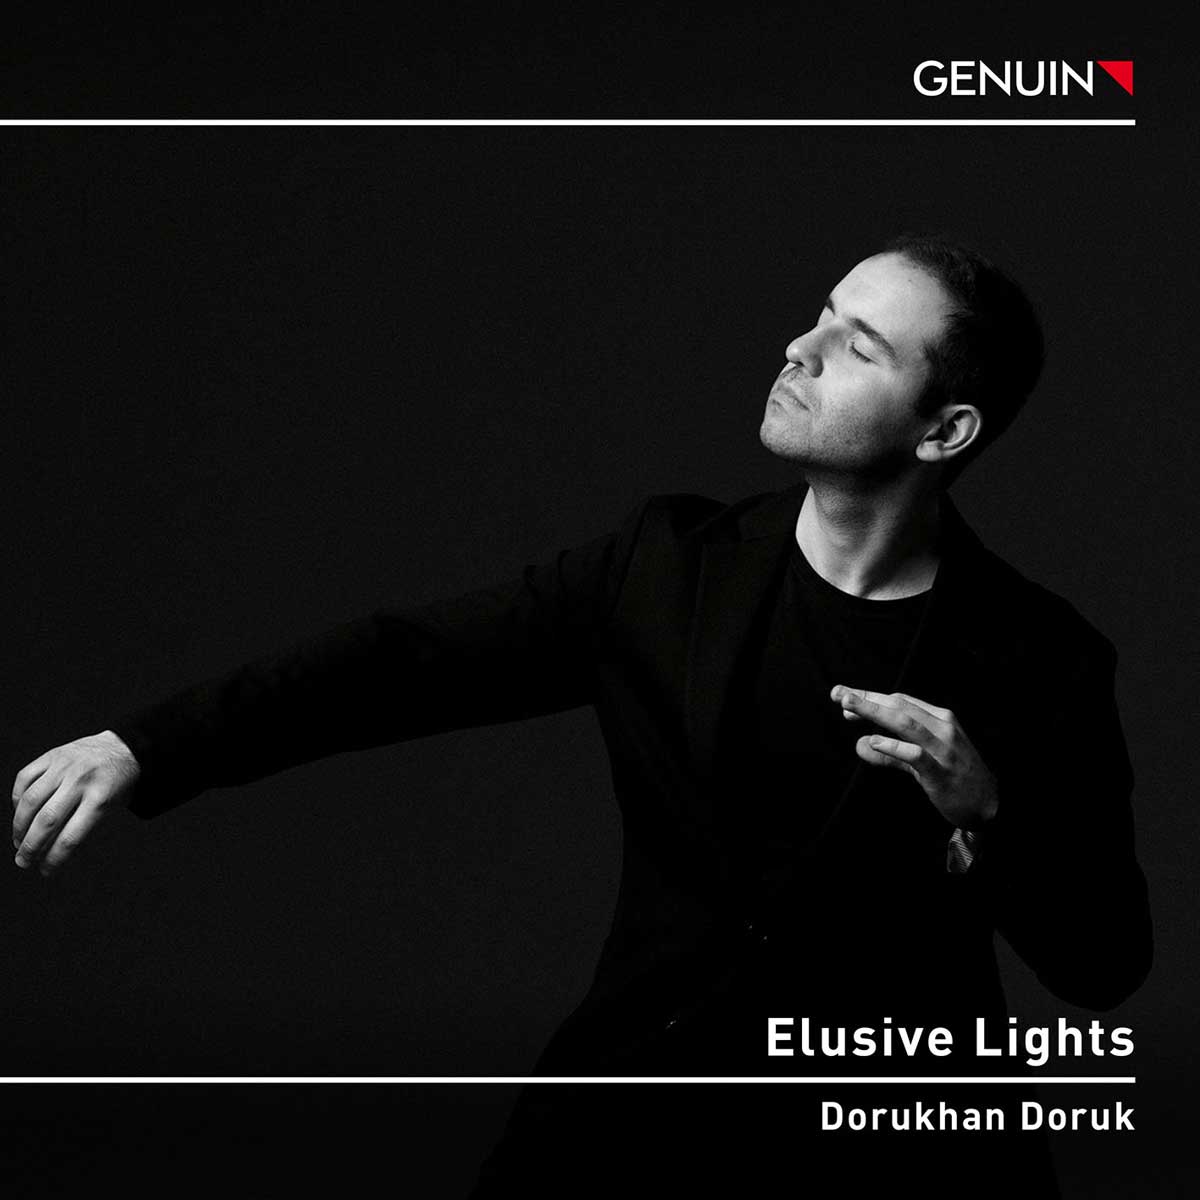 CD album cover 'Elusive Lights' (GEN 23840) with Dorukhan Doruk